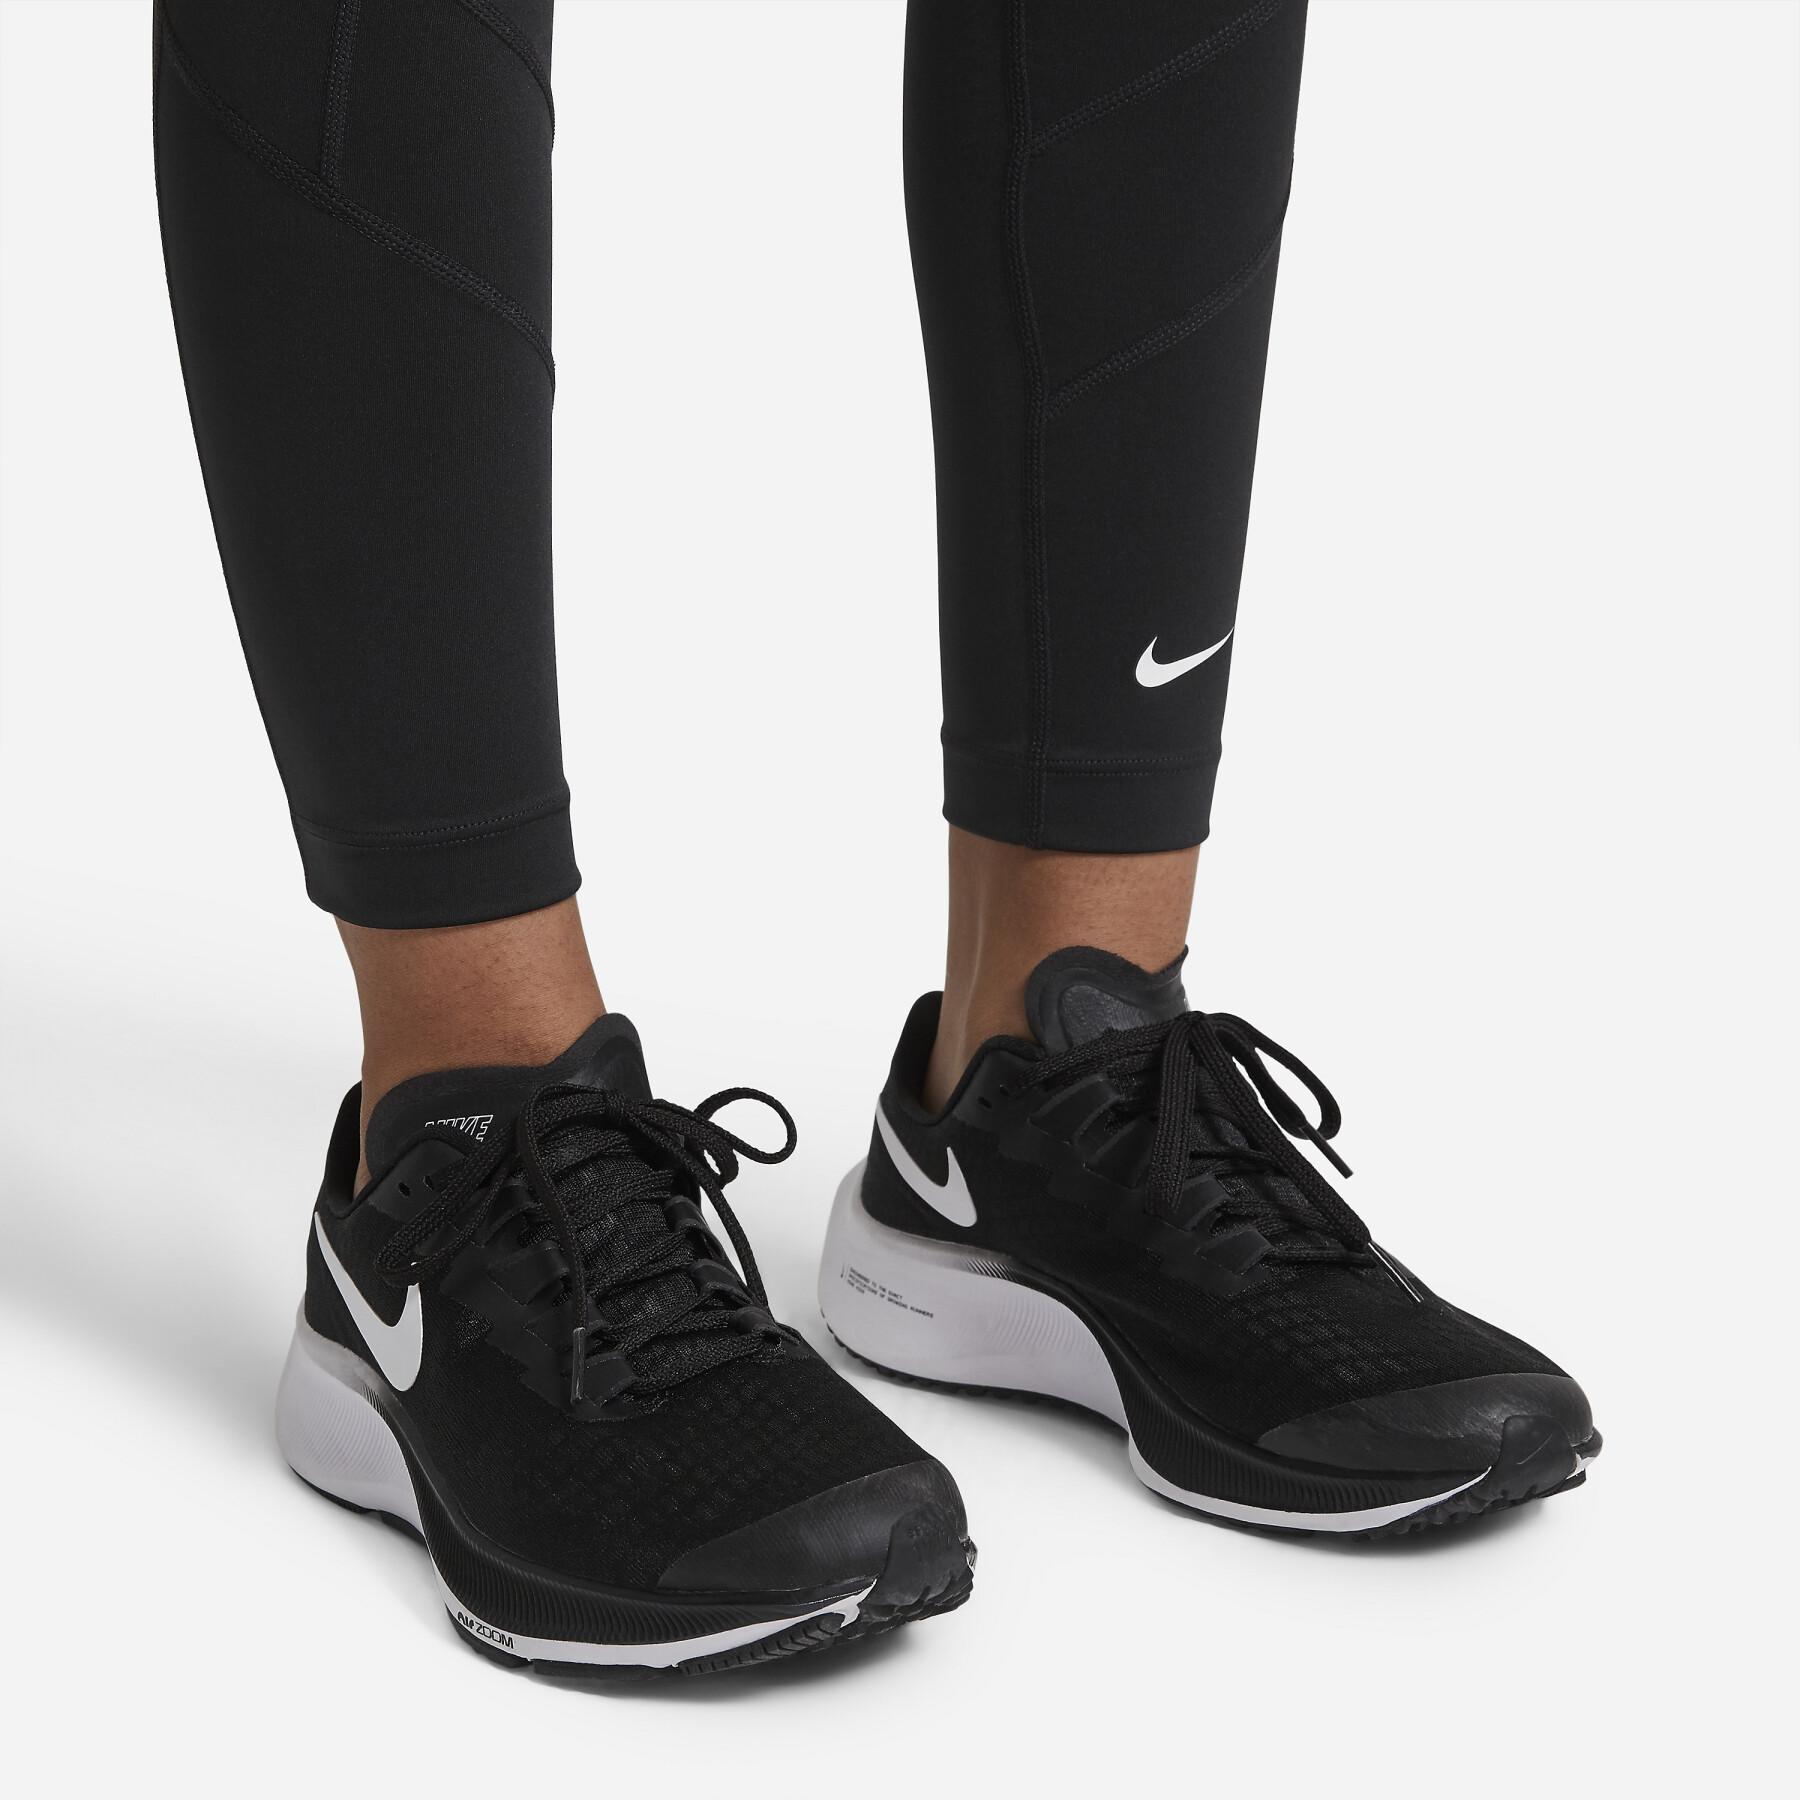 Legging girl Nike One